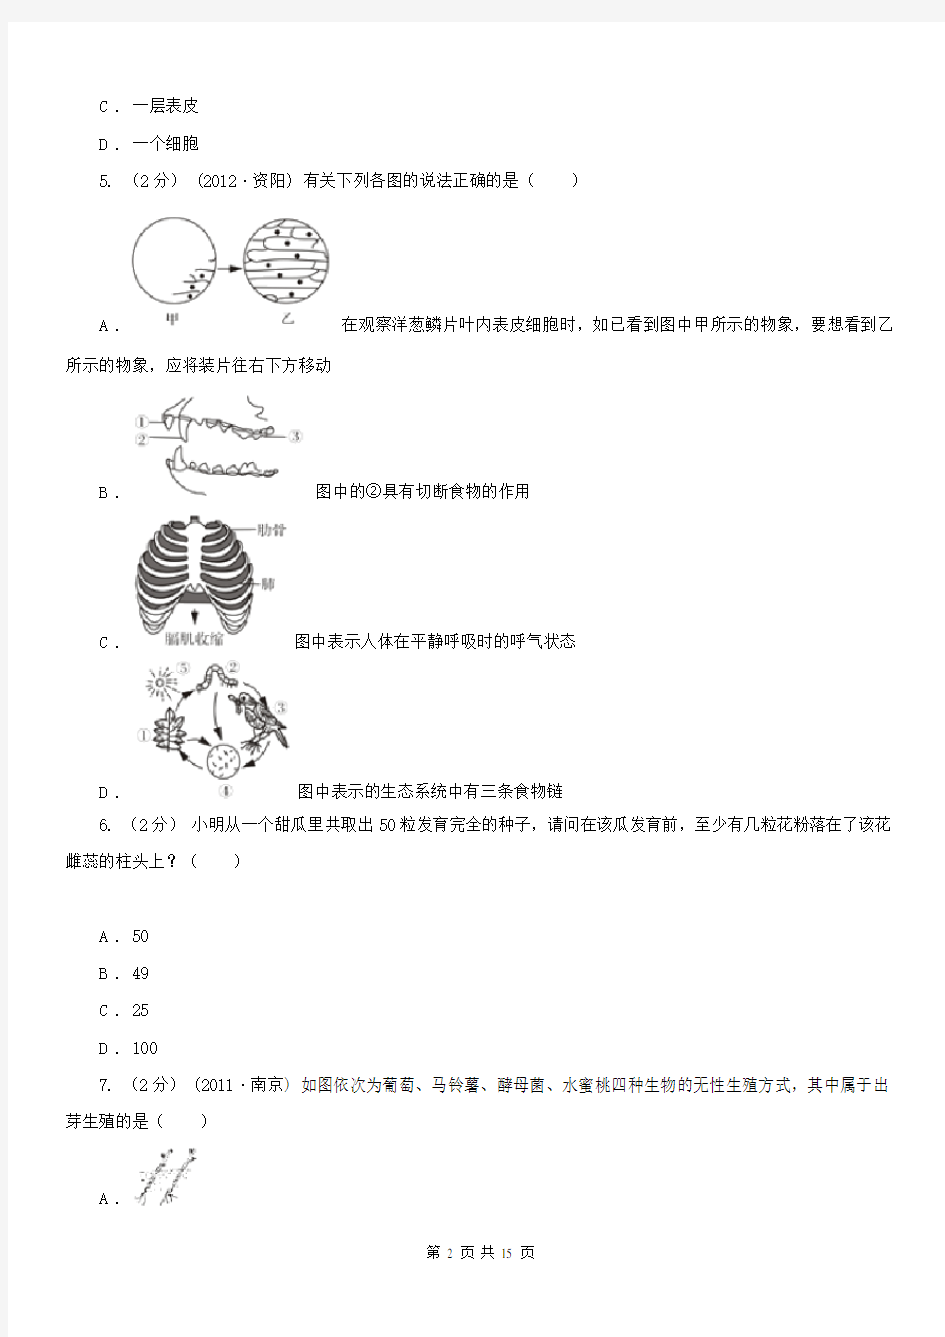 江苏省徐州市2020版中考生物试卷(II)卷